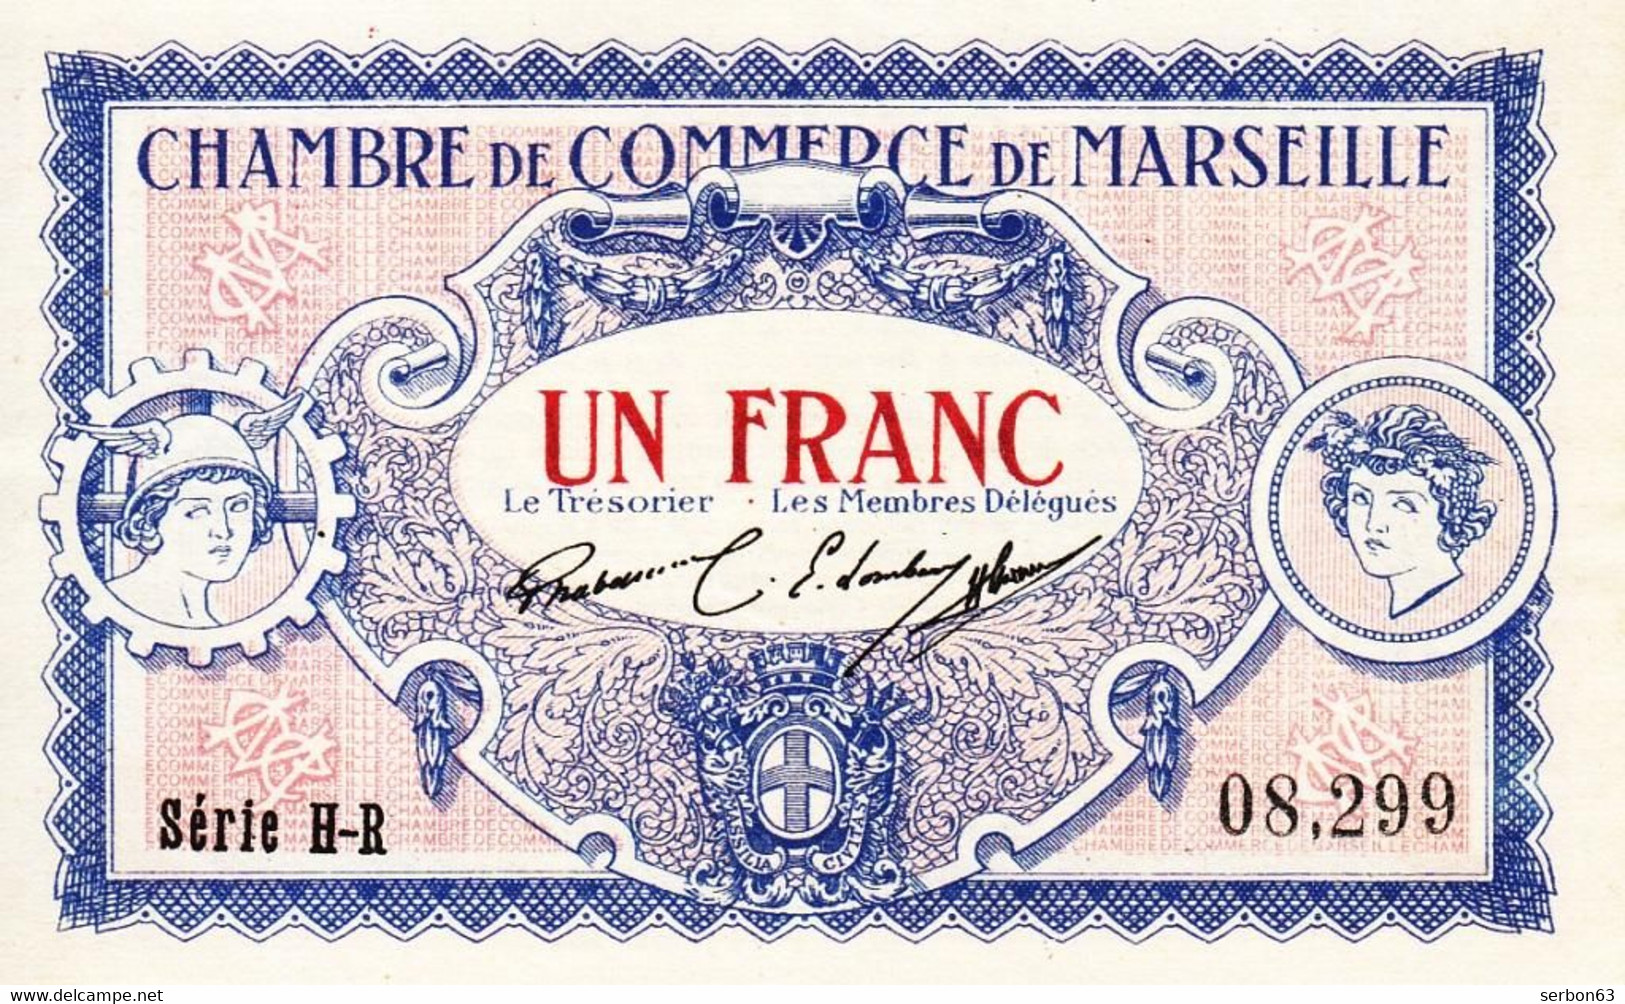 BON - BILLET - MONNAIE - 1 FRANC CHAMBRE DE COMMERCE 1917 DE MARSEILLE BOUCHES DU RHÔNE 13000  - SÉRIE H-R  N° 08299 - Camera Di Commercio